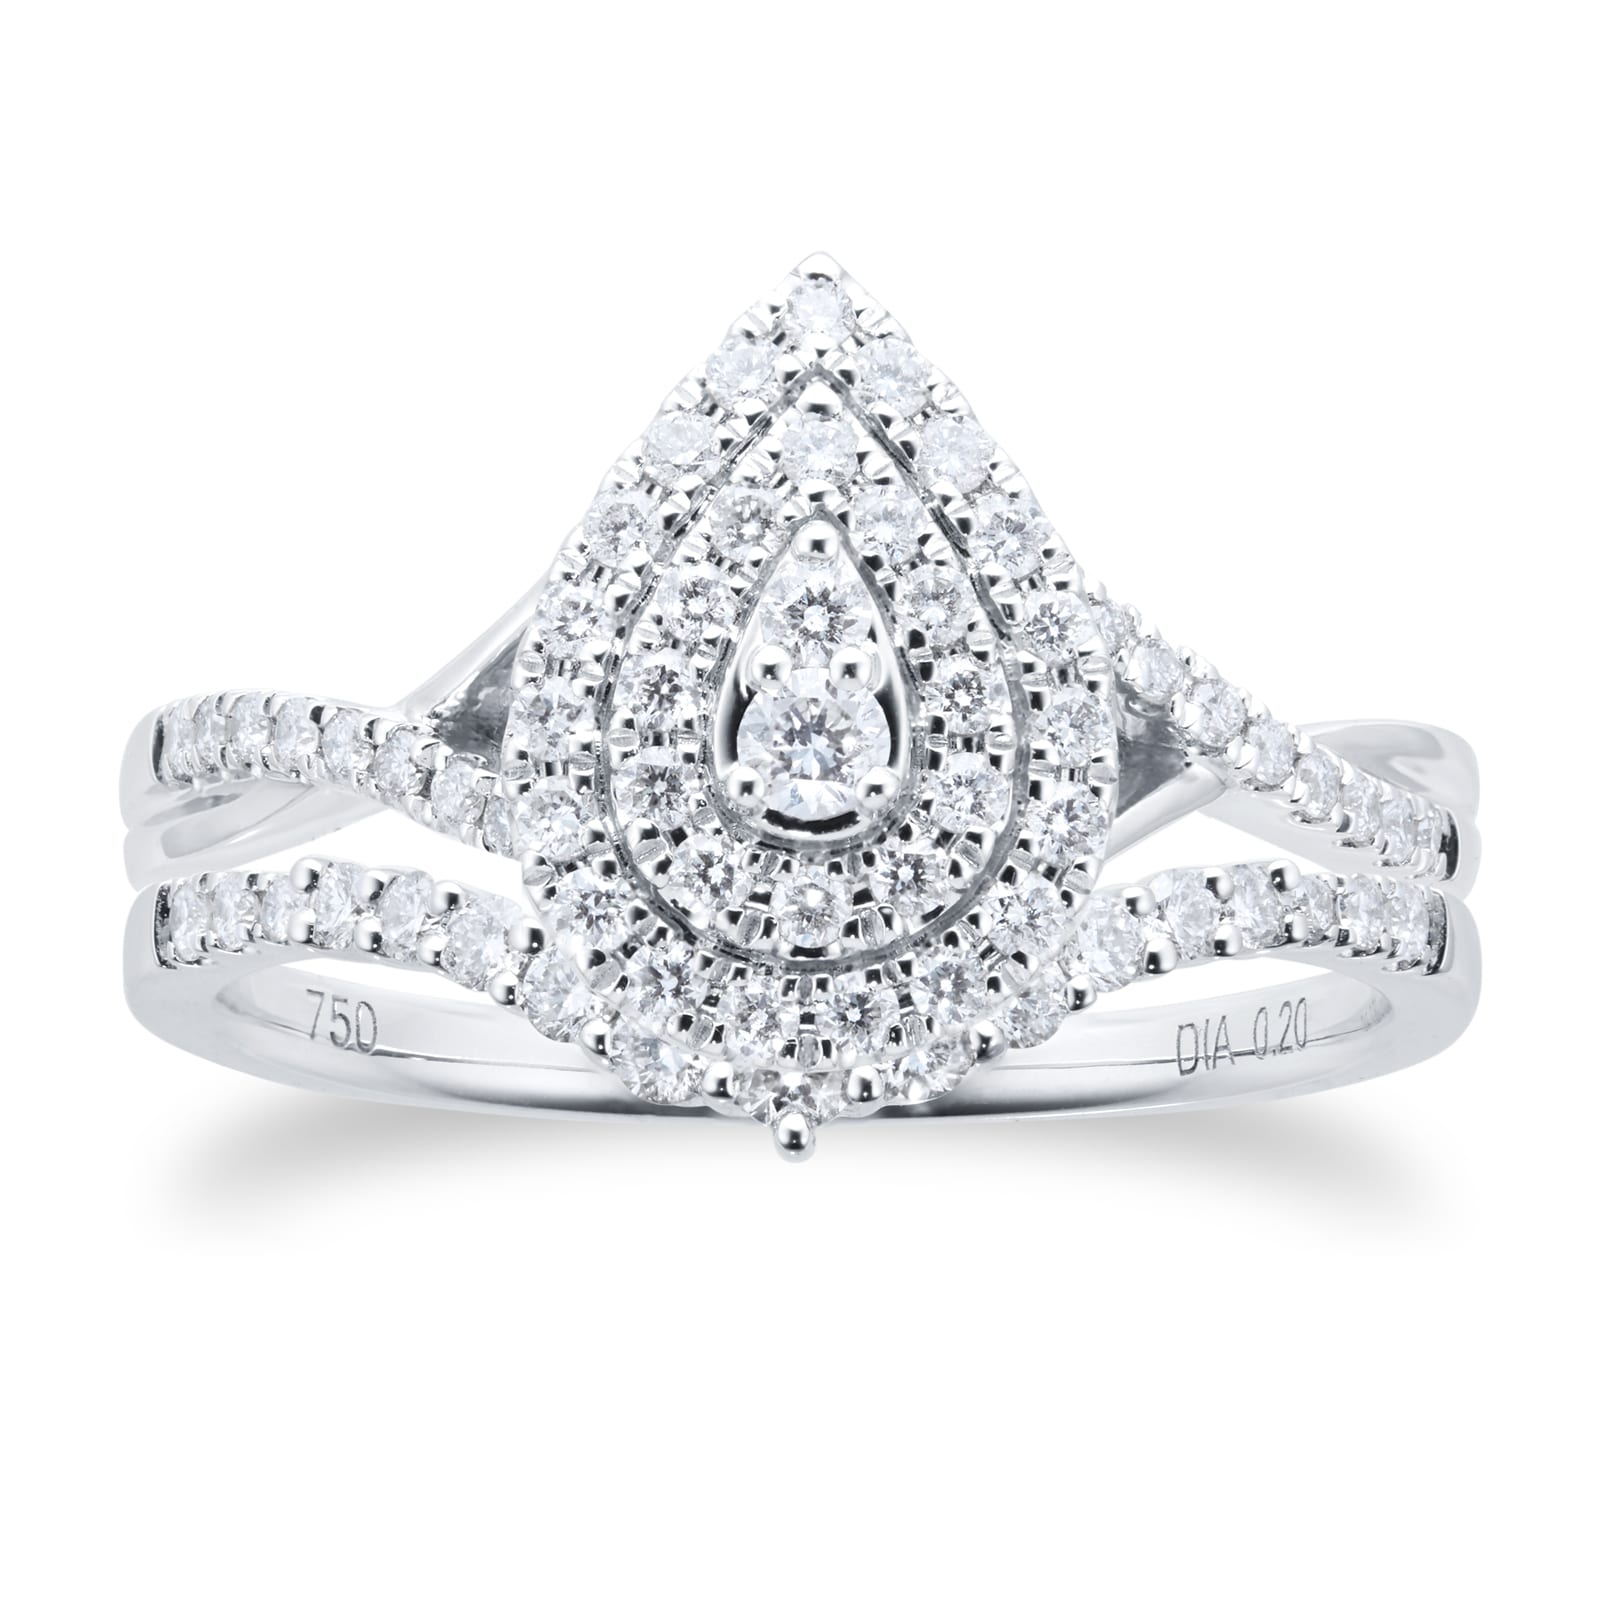 18ct White Gold Pear Diamond Bridal Set Ring - Ring Size N